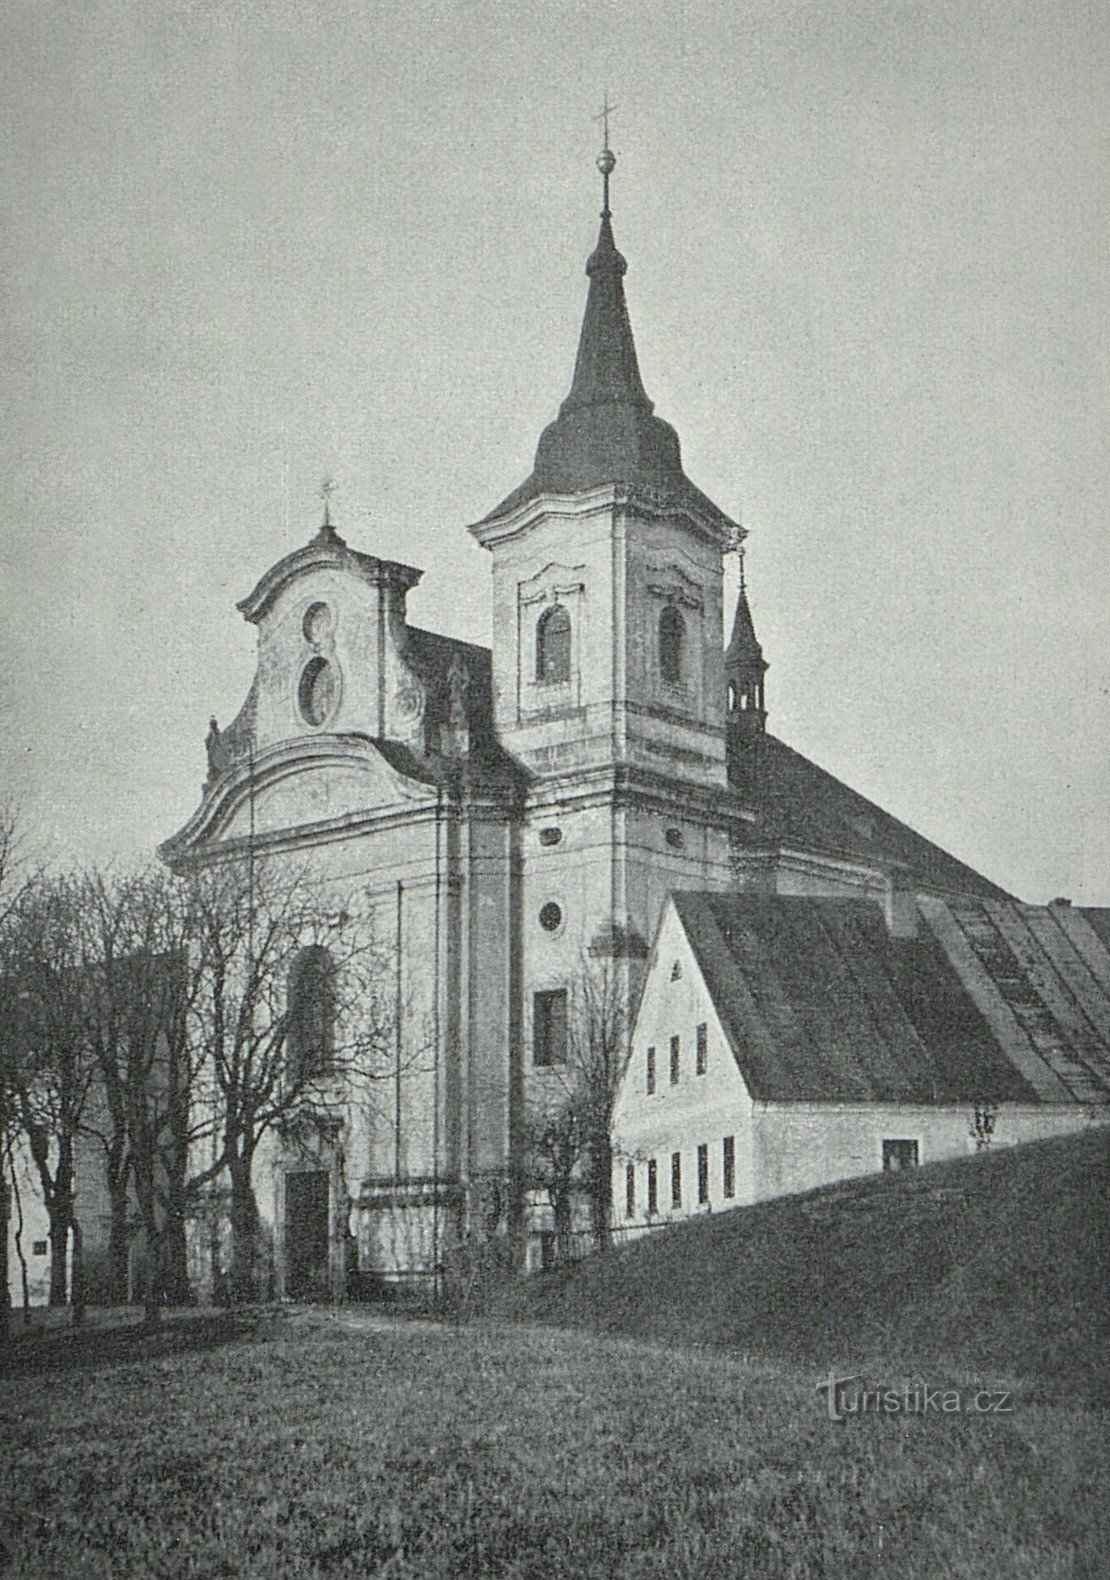 1909 年之前的新帕卡修道院教堂